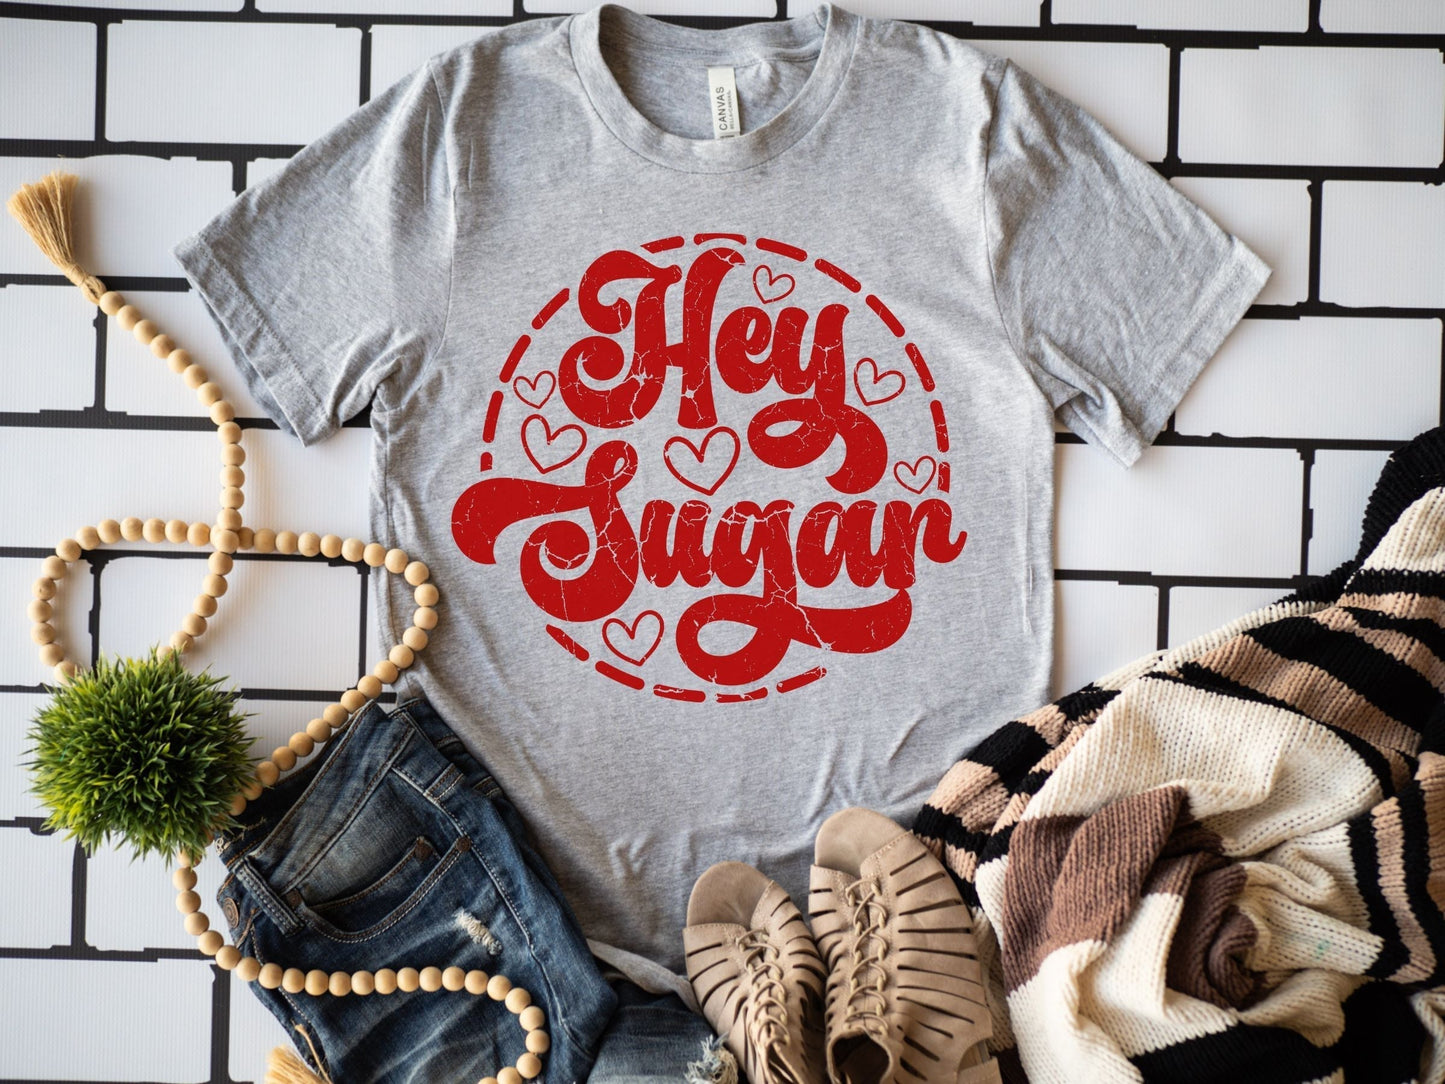 Hey Sugar!